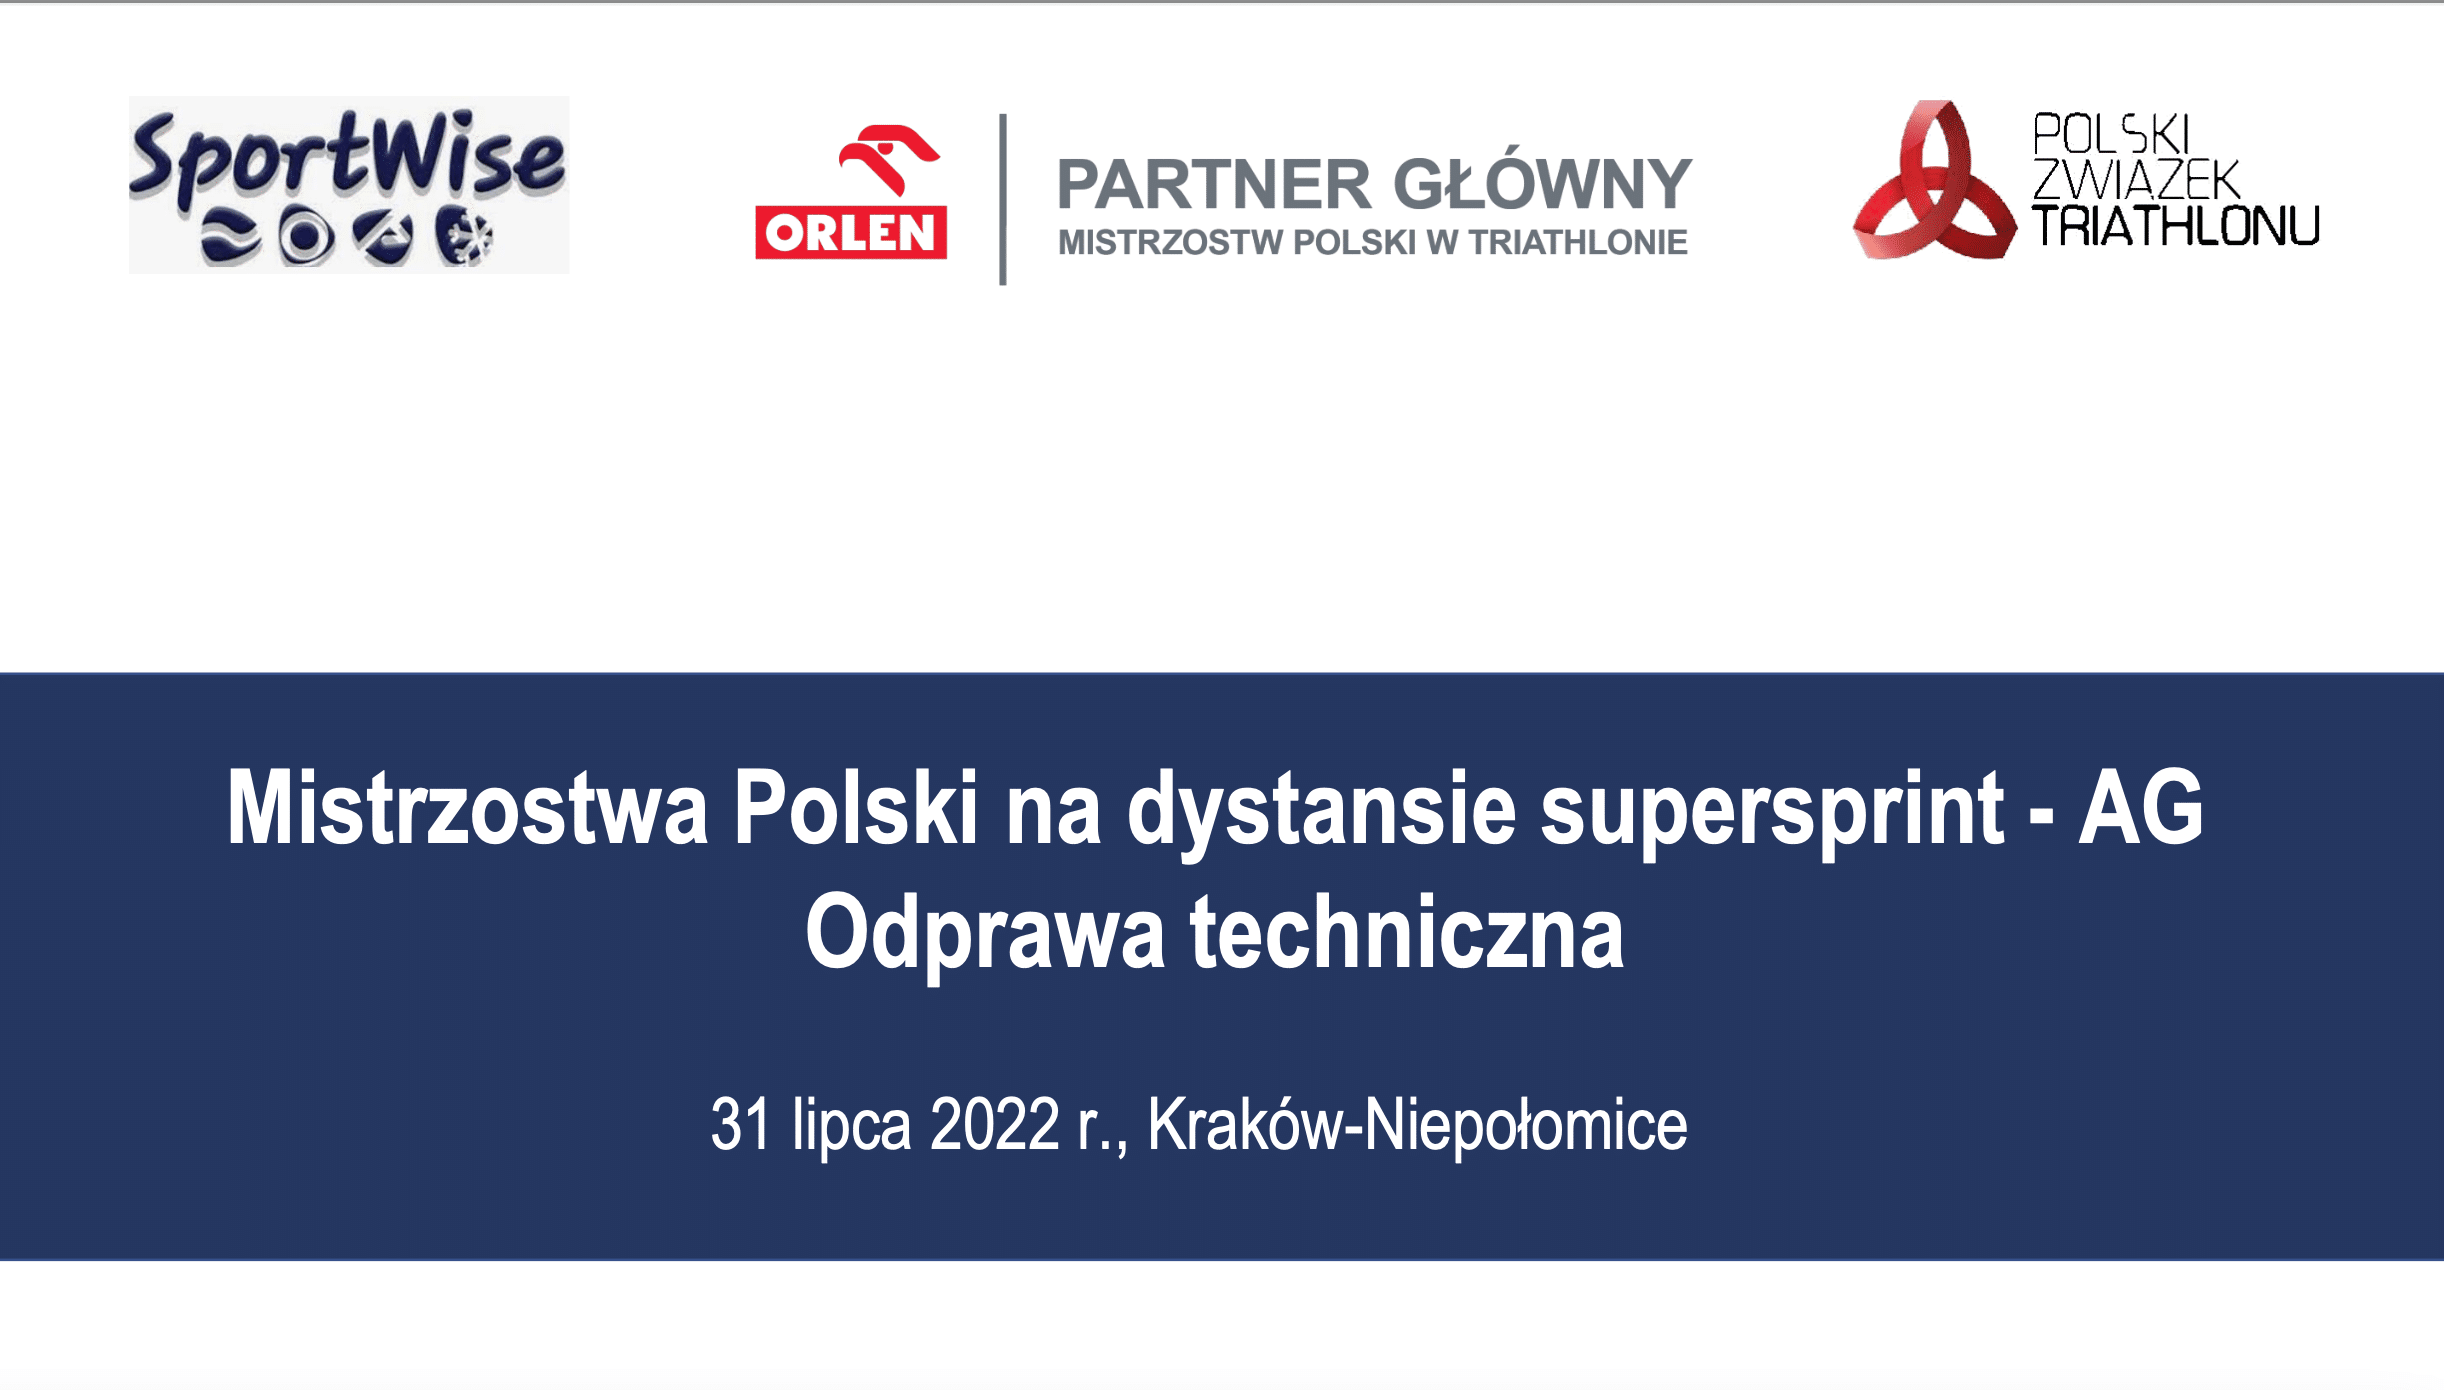 Odprawa techniczna MP AG Kraków-Niepołomice